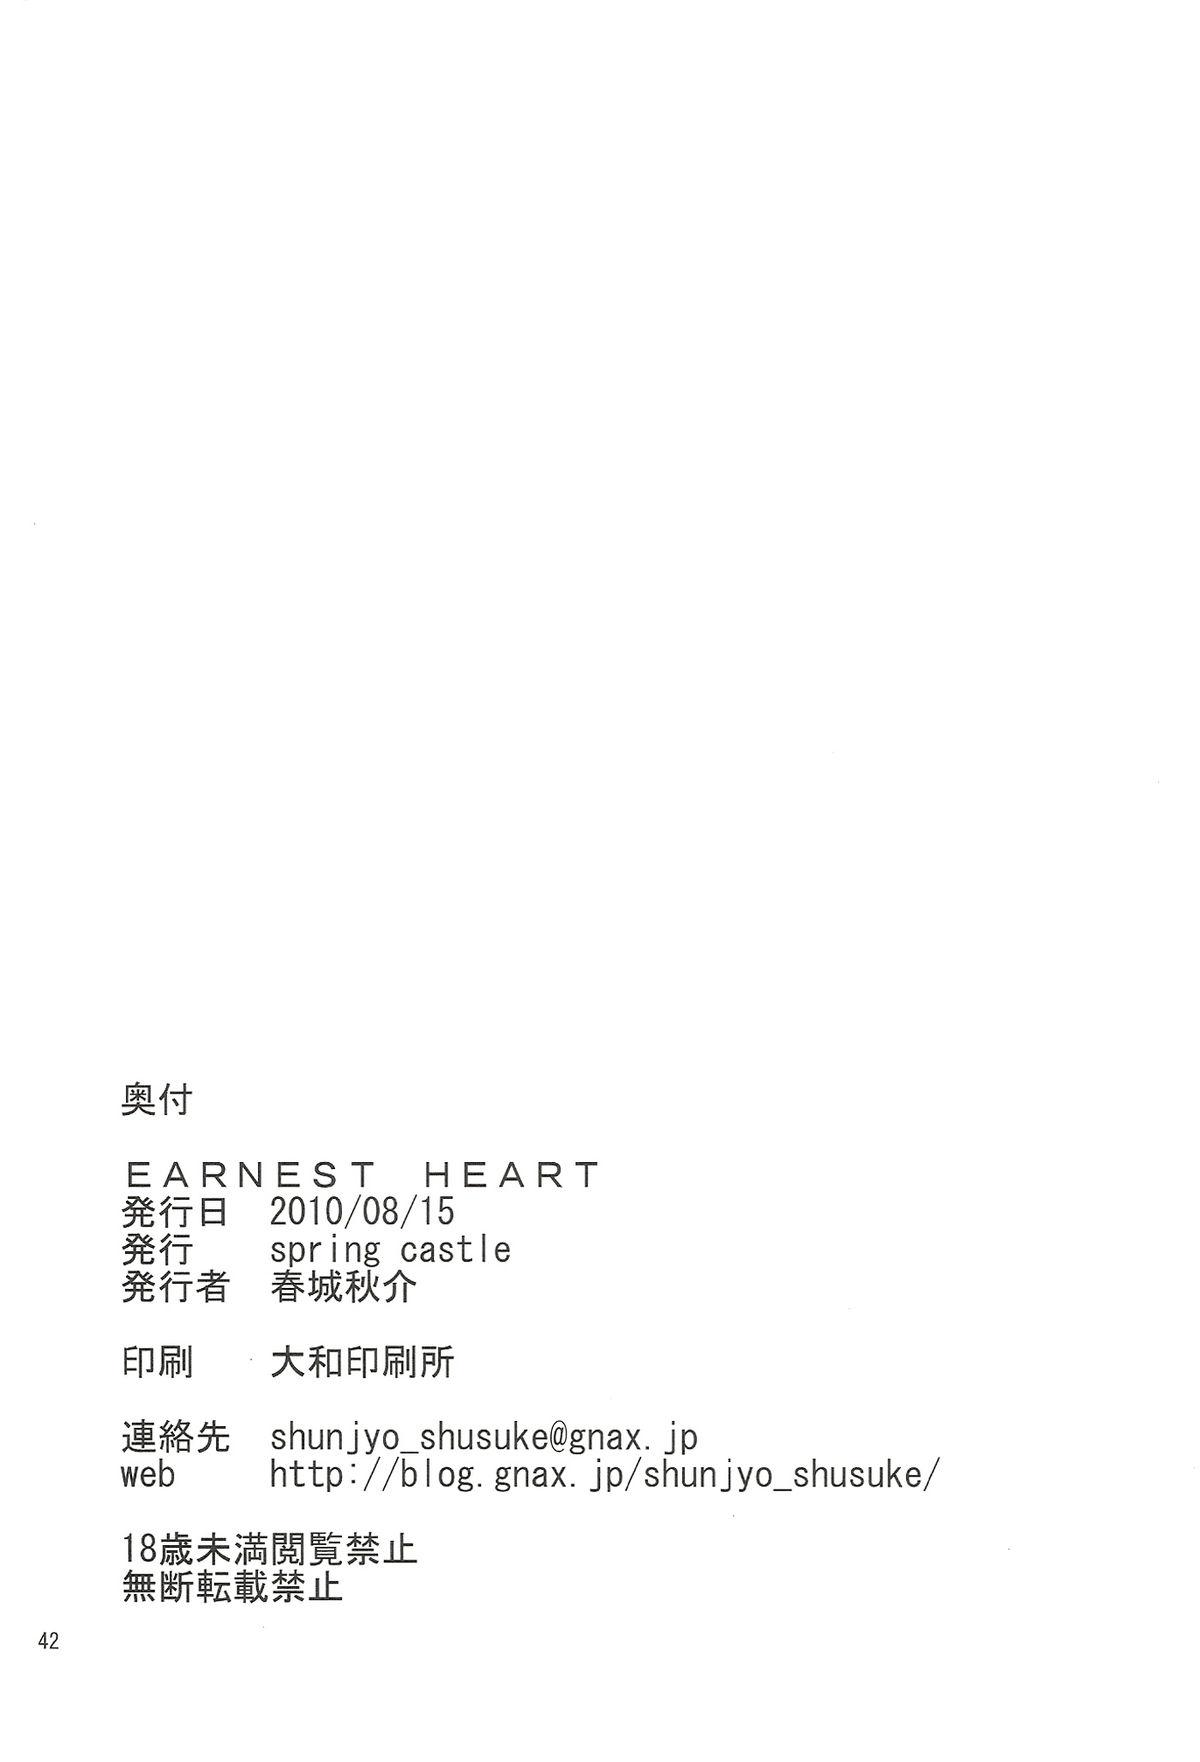 EARNEST HEART 41